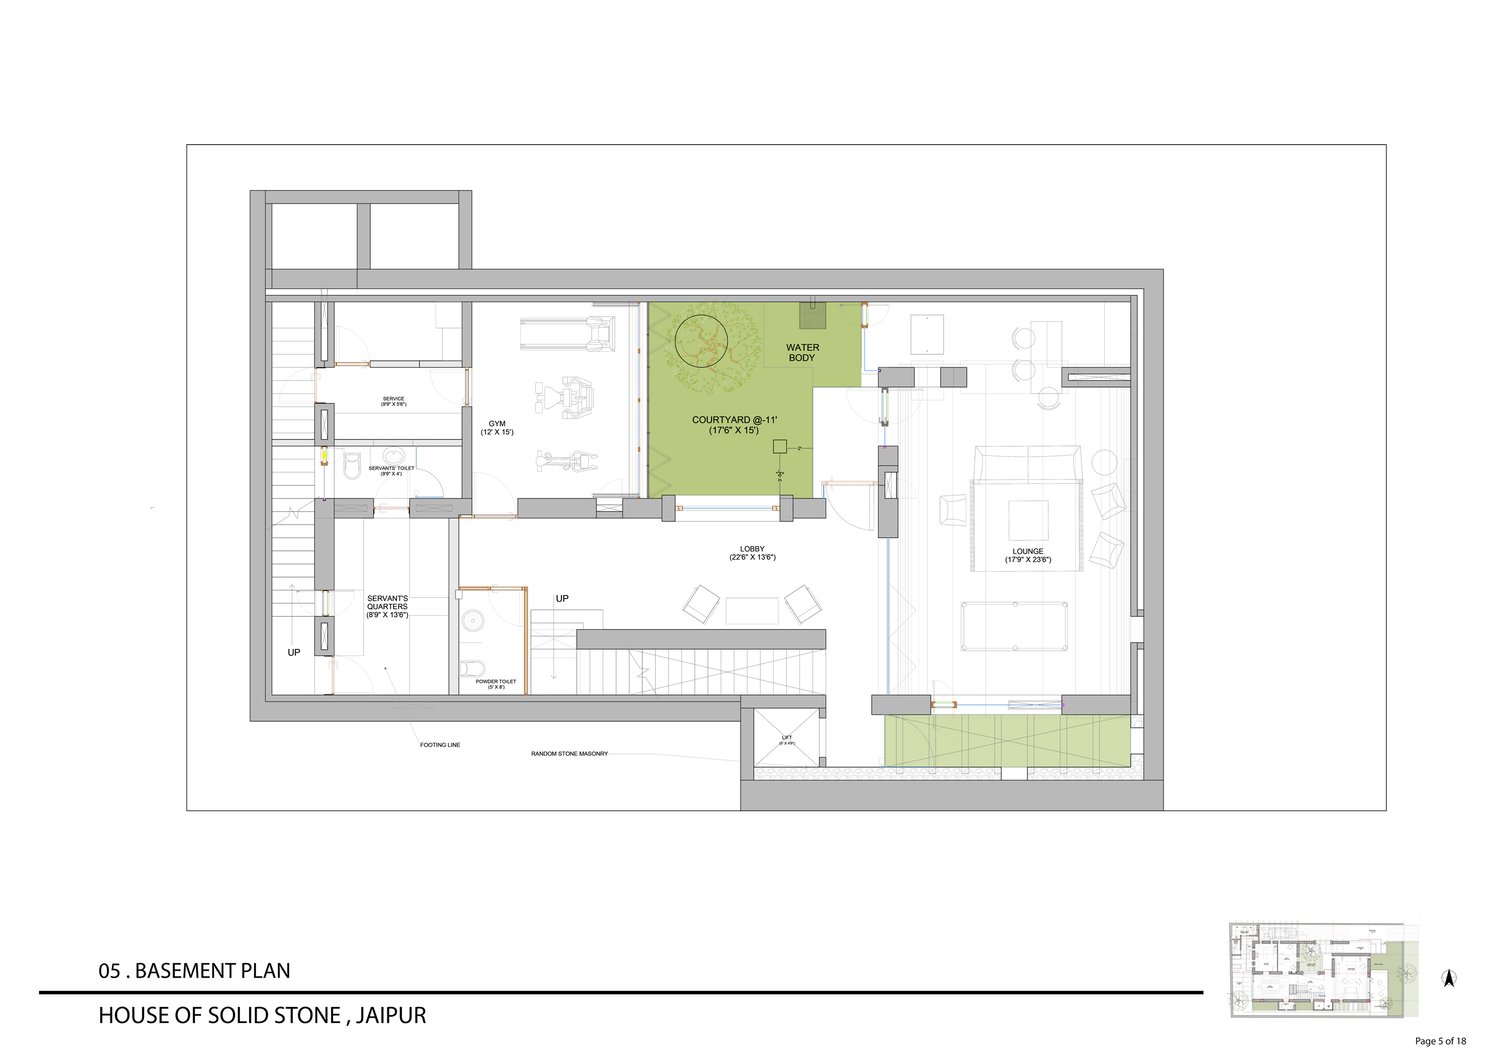 Basement Plan | Malik Architecture